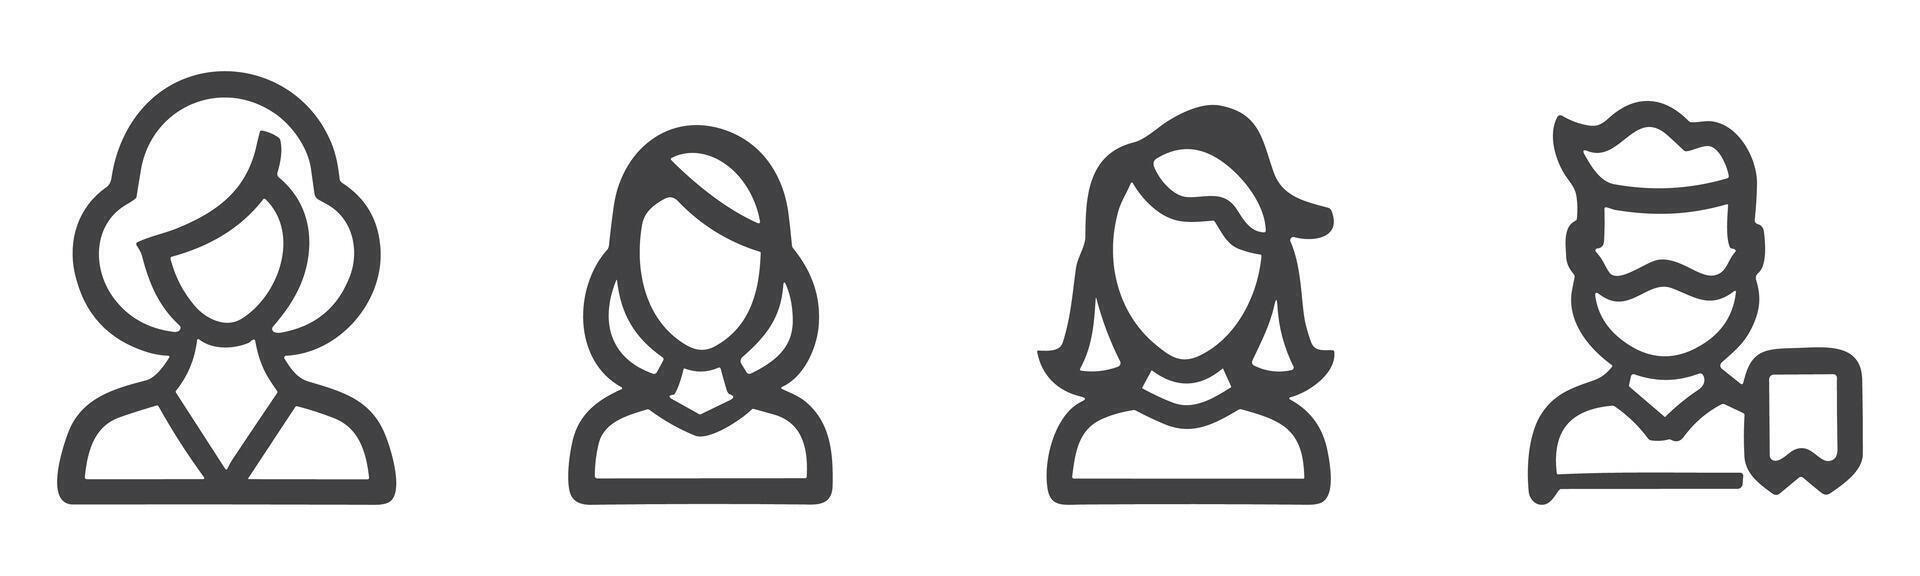 Benutzerbild Profil Symbol einstellen einschließlich männlich und weiblich. vektor